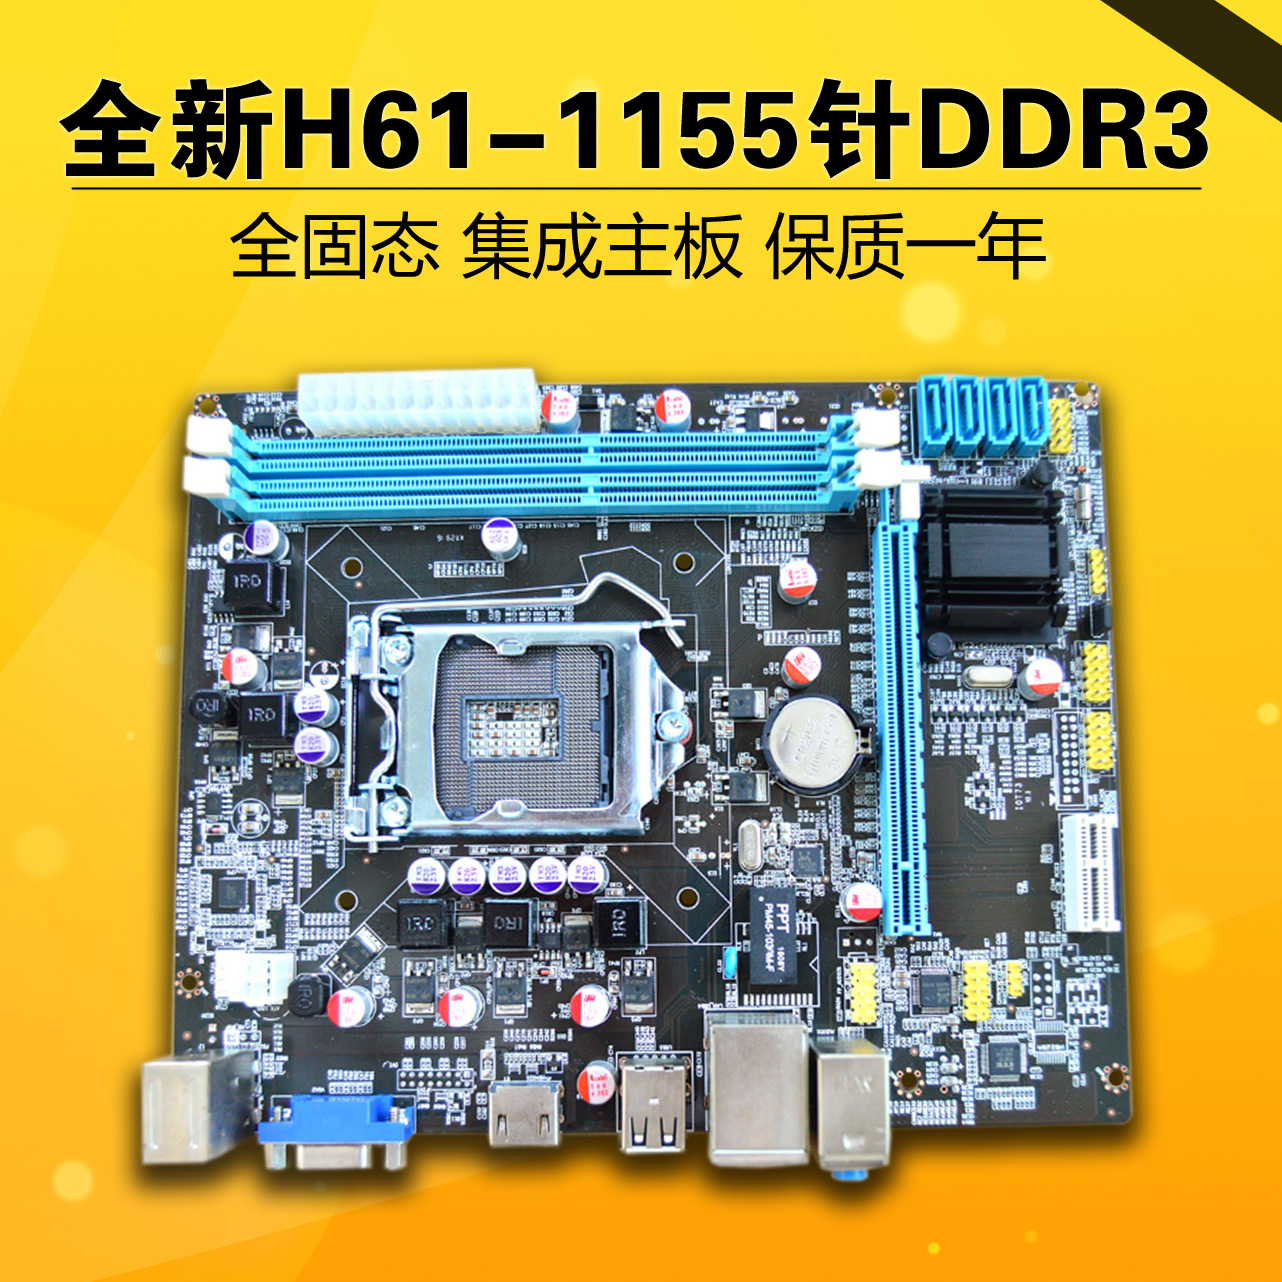 全新H61-1155针DDR3电脑主板 集成全固态支持双核/四核I3/I5等CPU